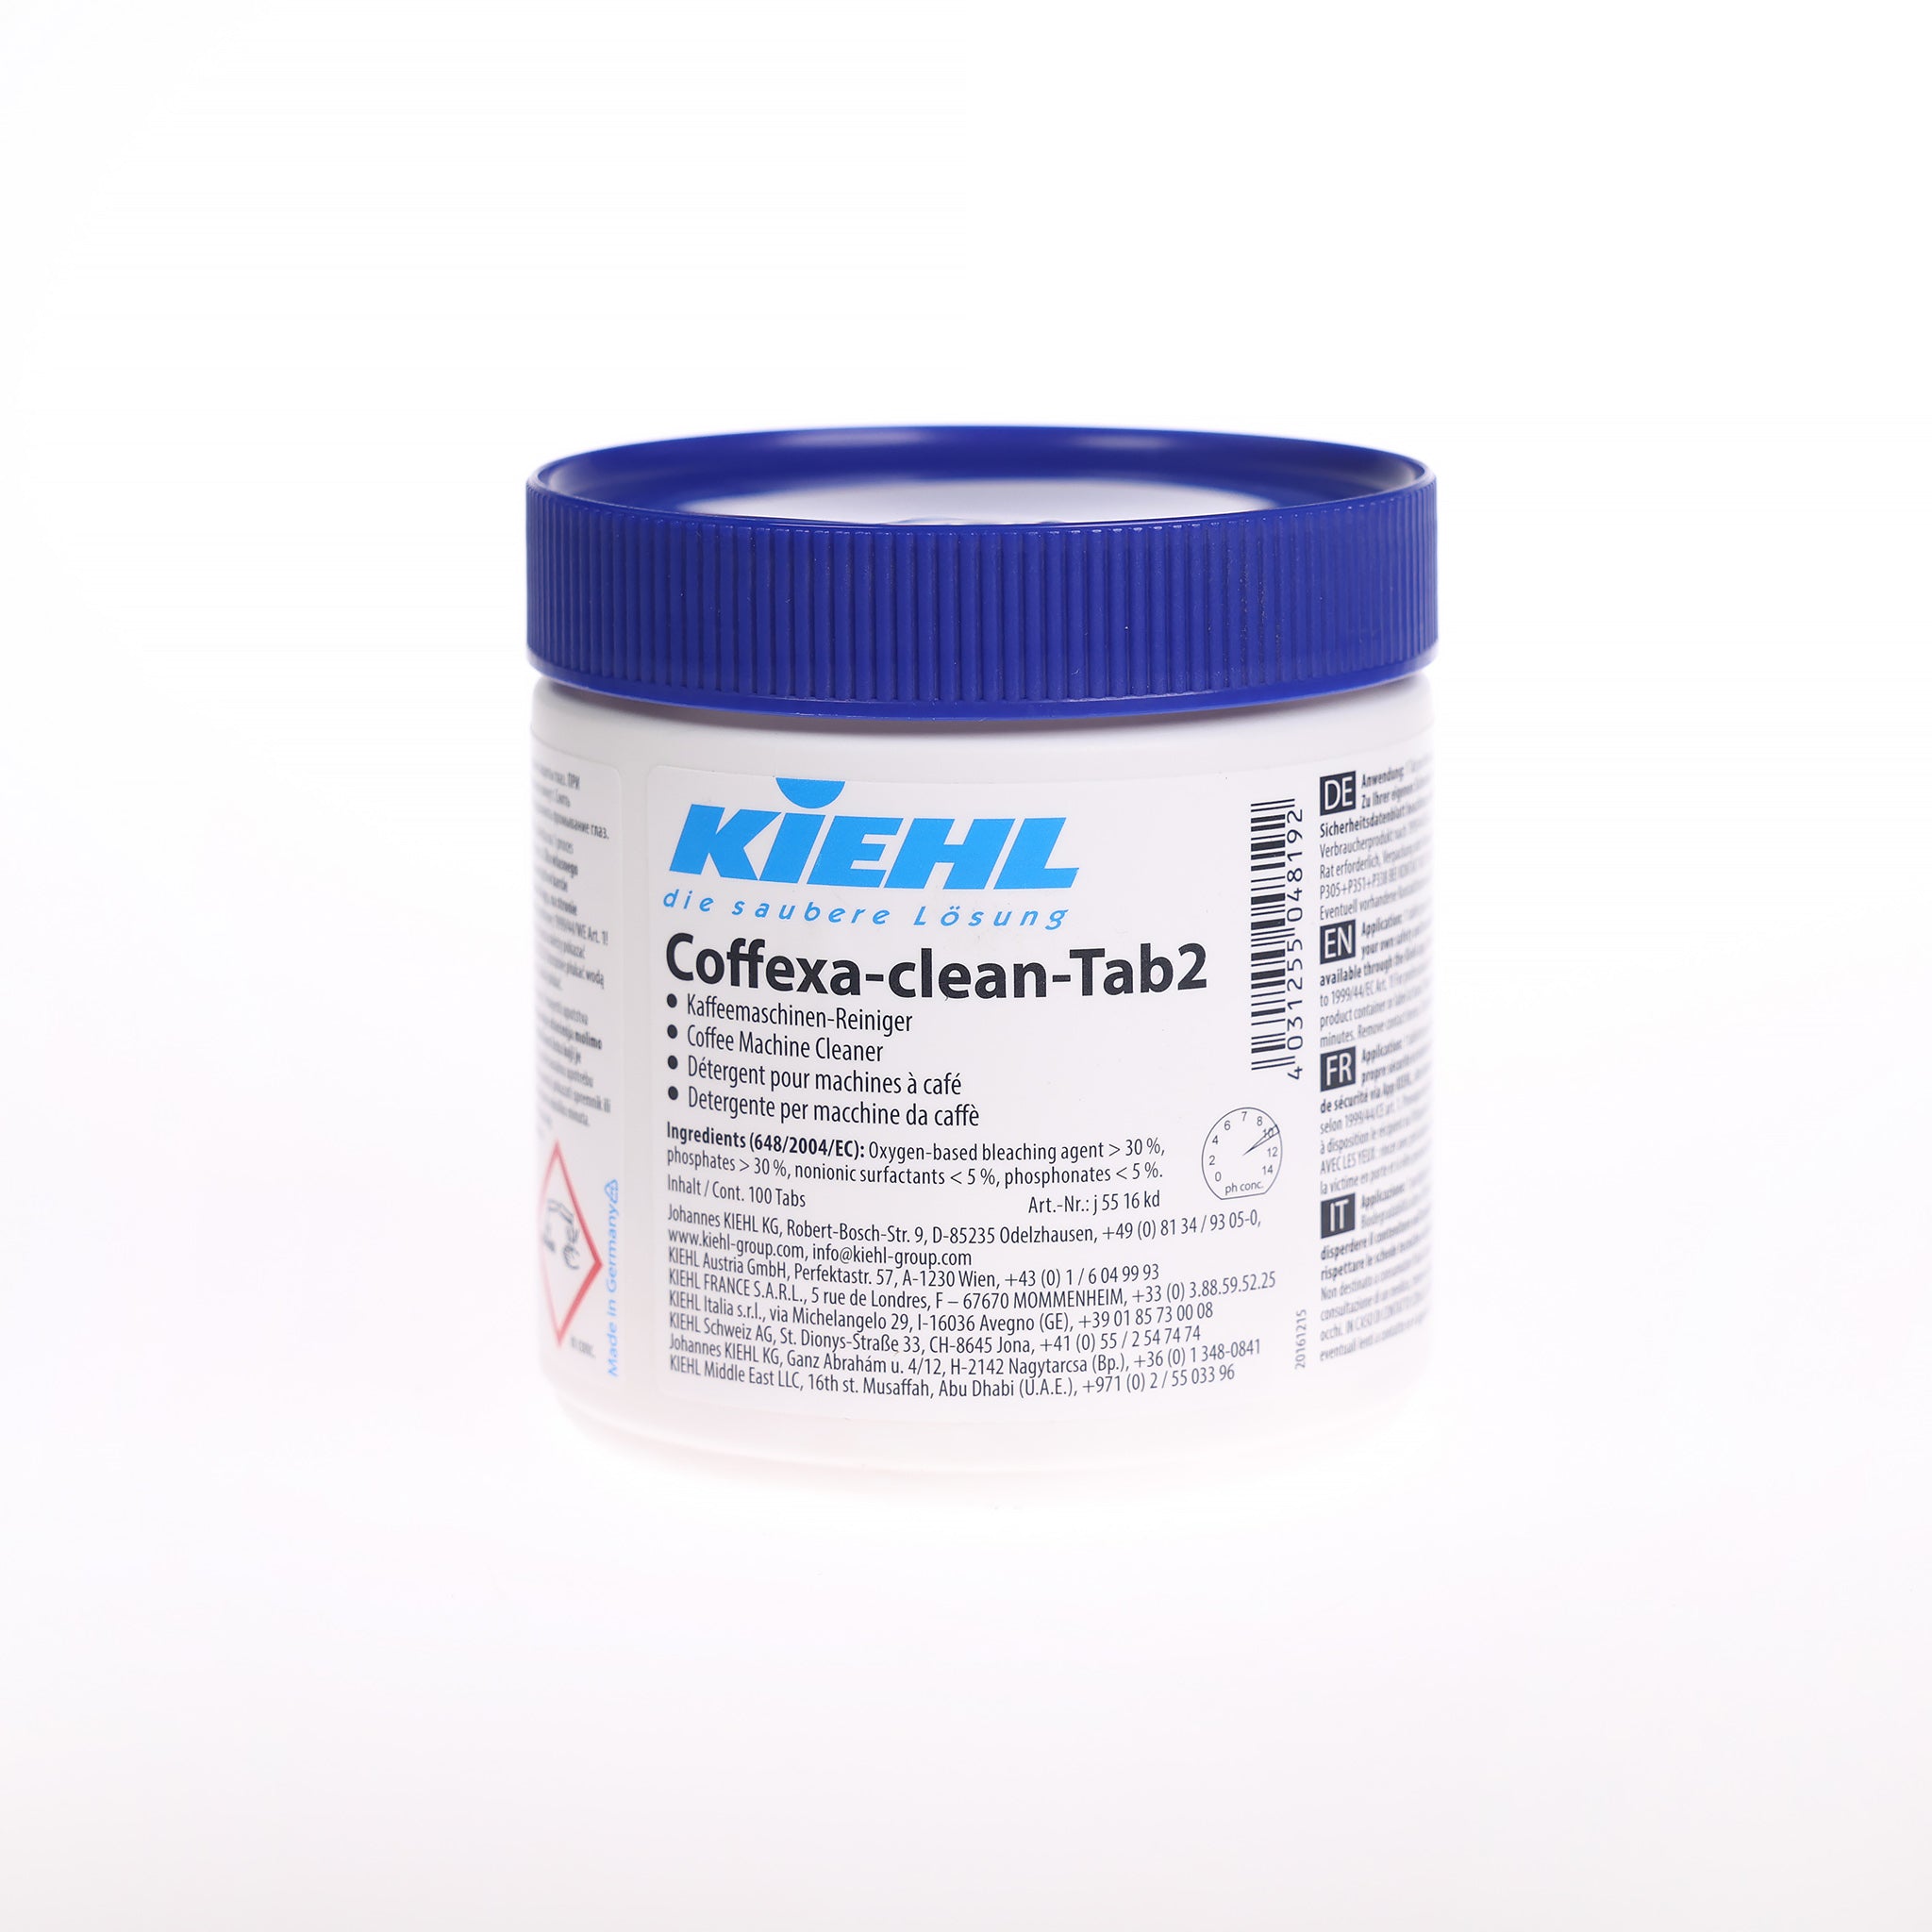 Kiehl Coffexa-Clean-Tab2 rengøringstabs fjerner effektivt kaffeolie, fedt og andre efterladenskaber i kaffemaskiner og lign.